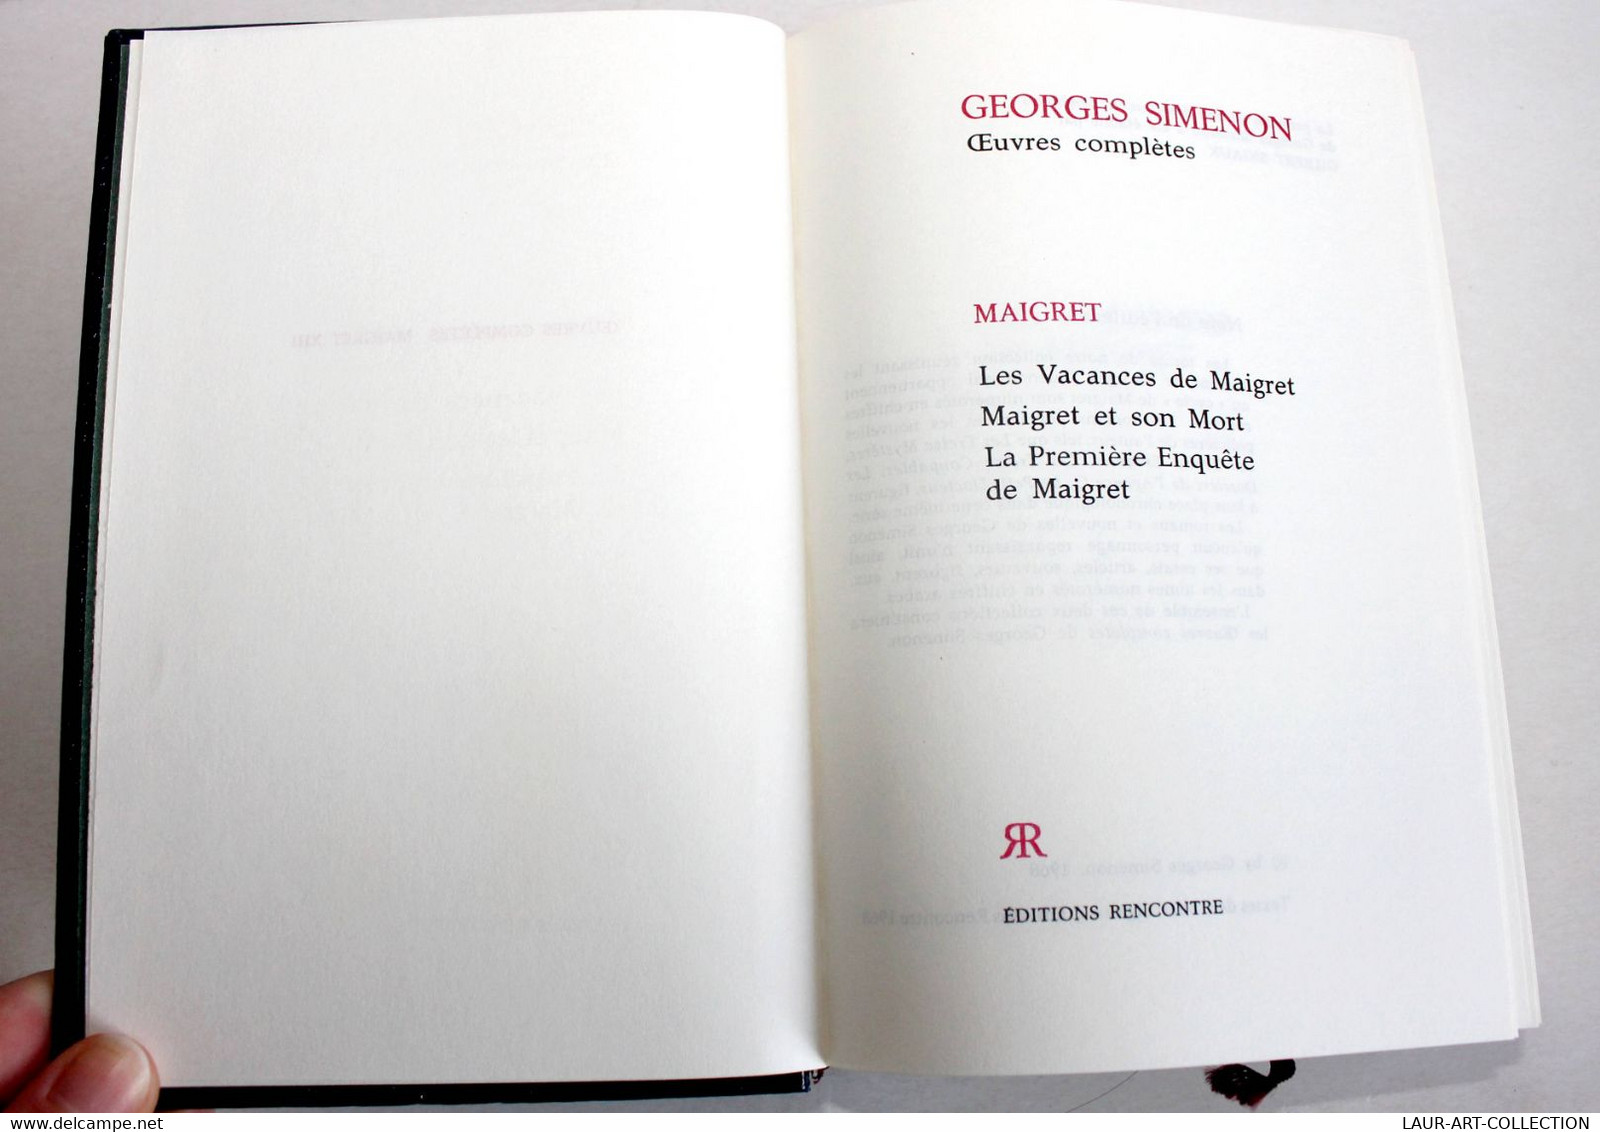 GEORGES SIMENON - OEUVRES COMPLETES, MAIGRET N°XIII VACANCES DE MAIGRET, Et MORT / ANCIEN LIVRE DE COLLECTION (2301.240) - Simenon